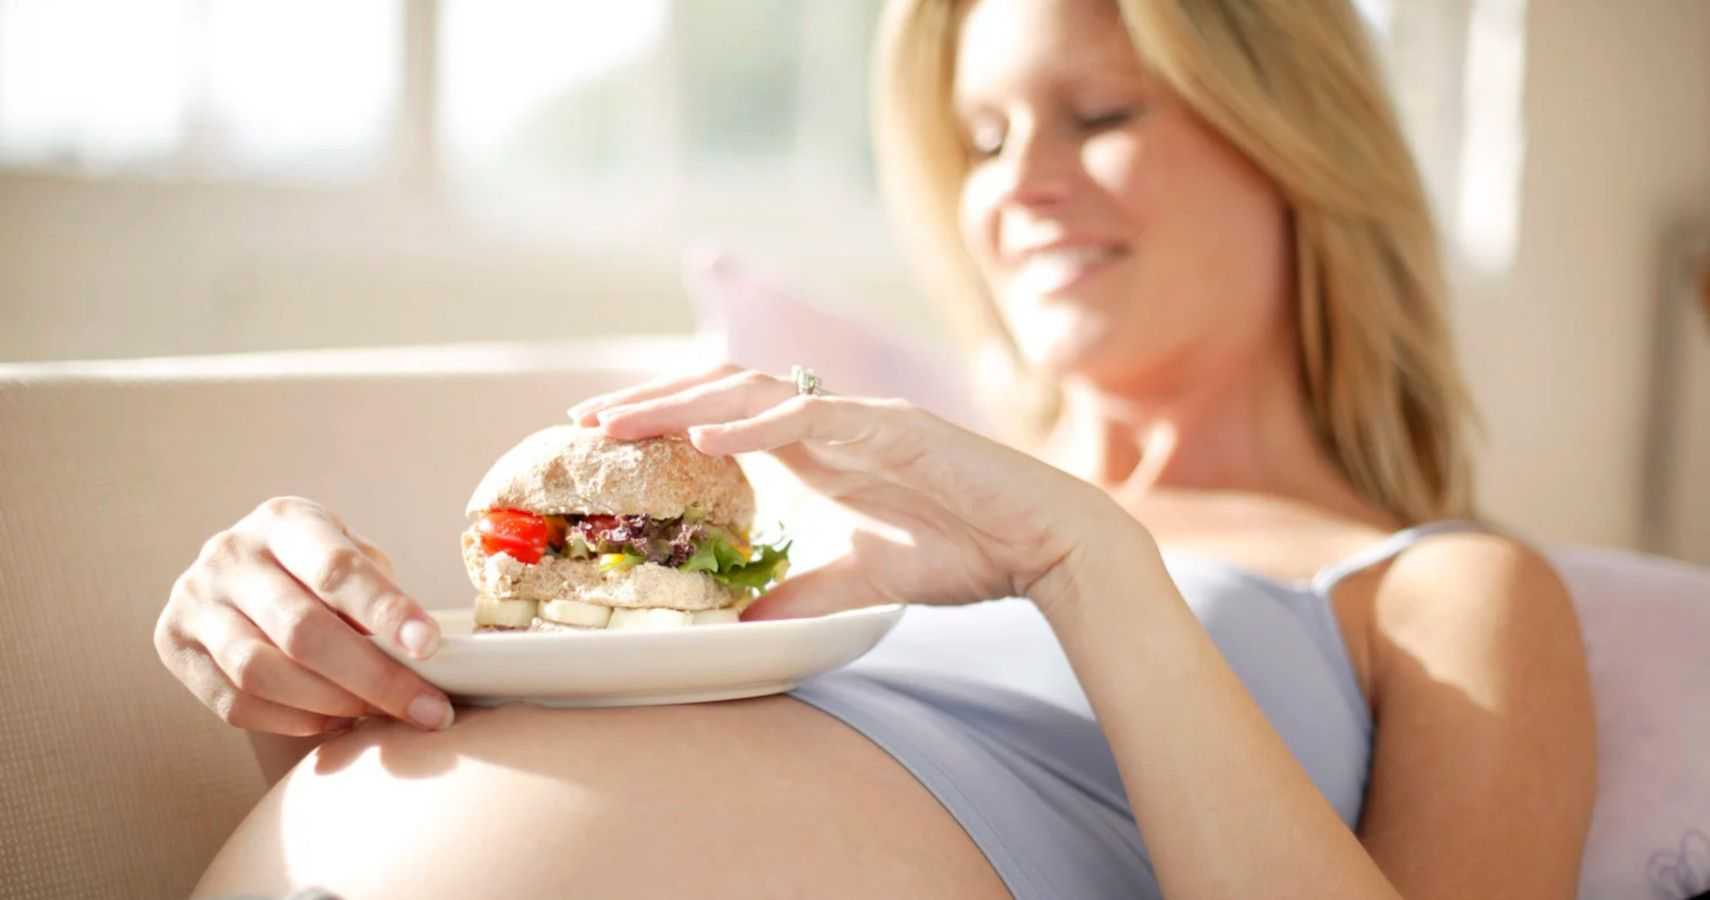 Прибавка в весе при беременности: таблица нормы по неделям, способы похудеть